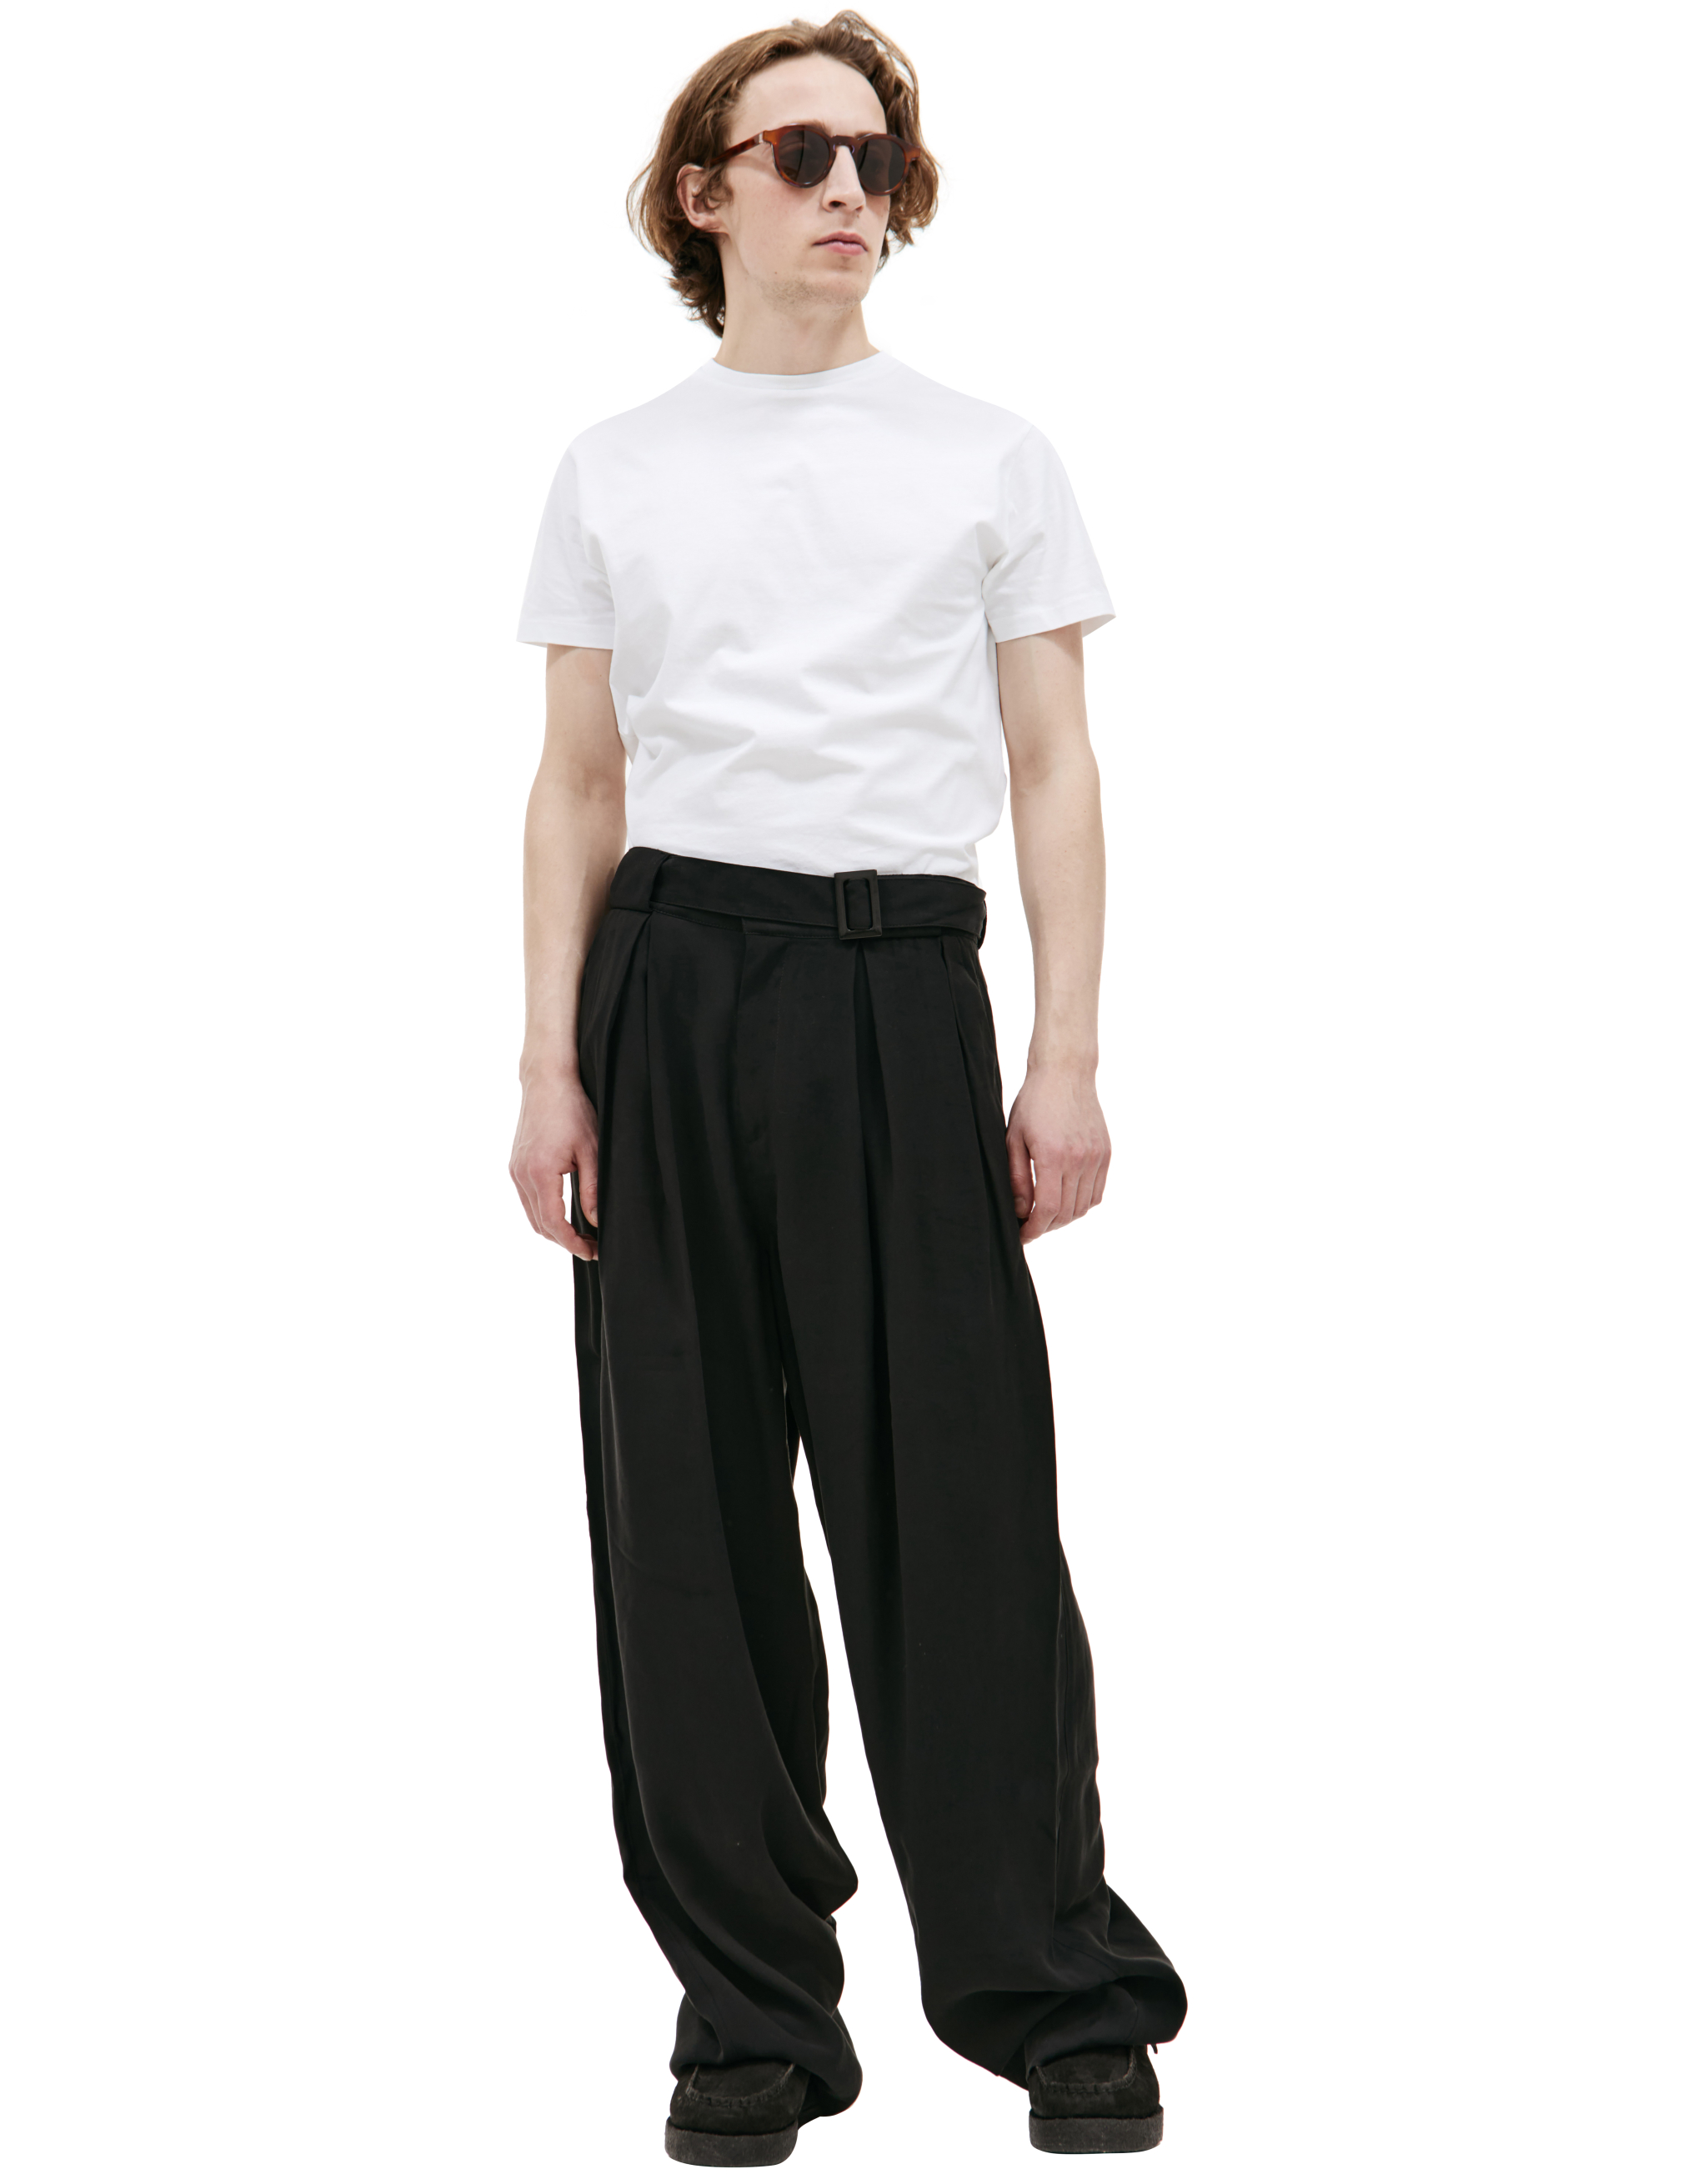 Широкие брюки с поясом LOUIS GABRIEL NOUCHI 0734/T600/001, размер M;L 0734/T600/001 - фото 1